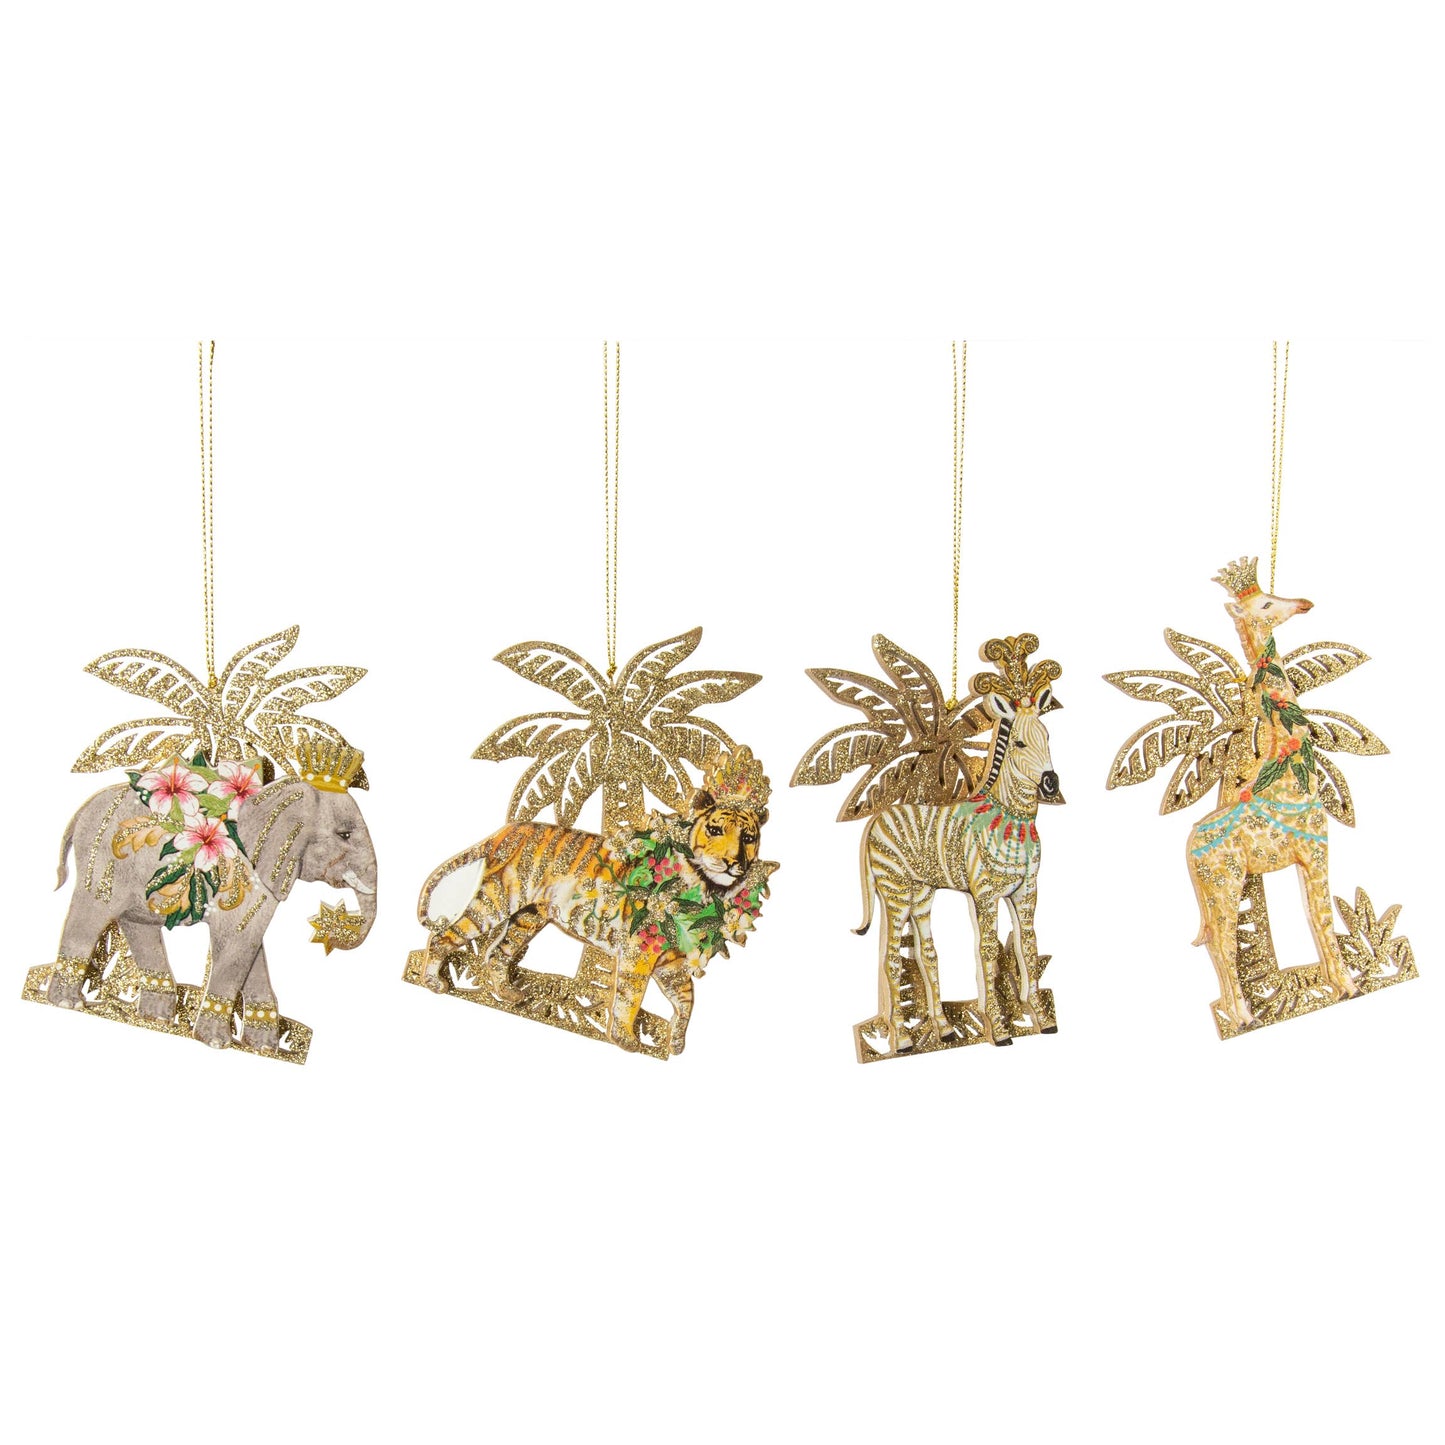 Fantasy Animals in Palm Tree Scene Ornament